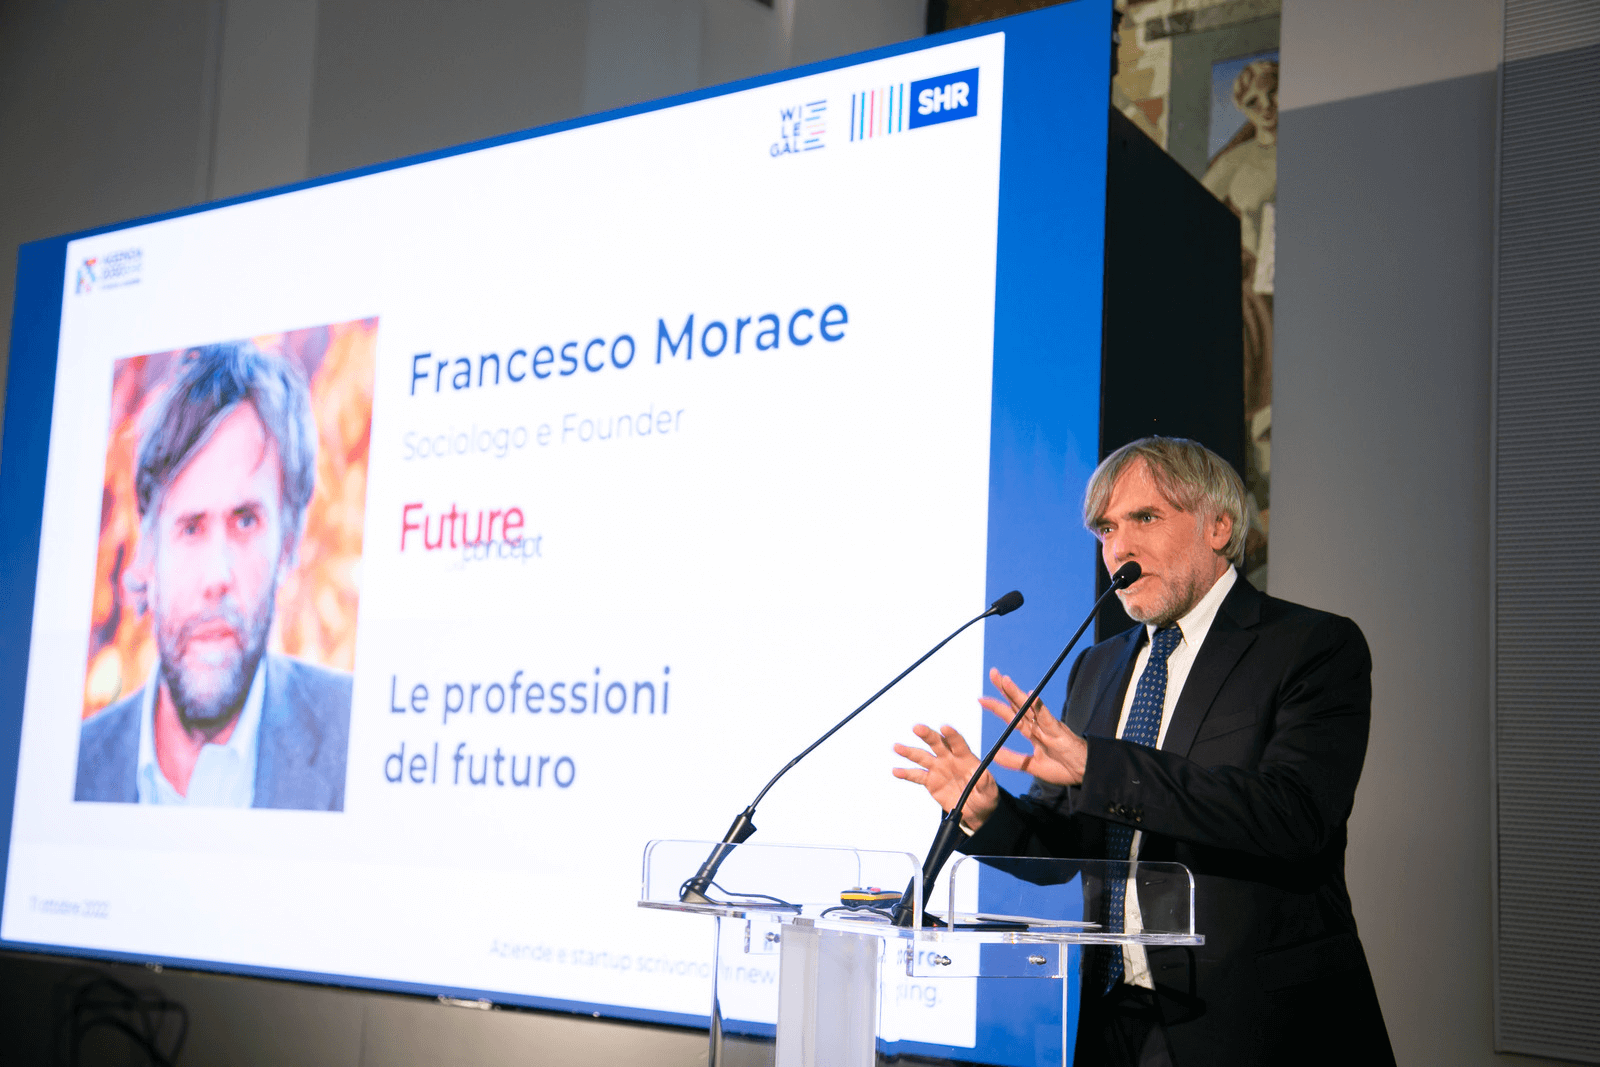 Francesco Morace, sociologo e saggista, fondatore del Future Concept Lab, all'evento Agenda 2030